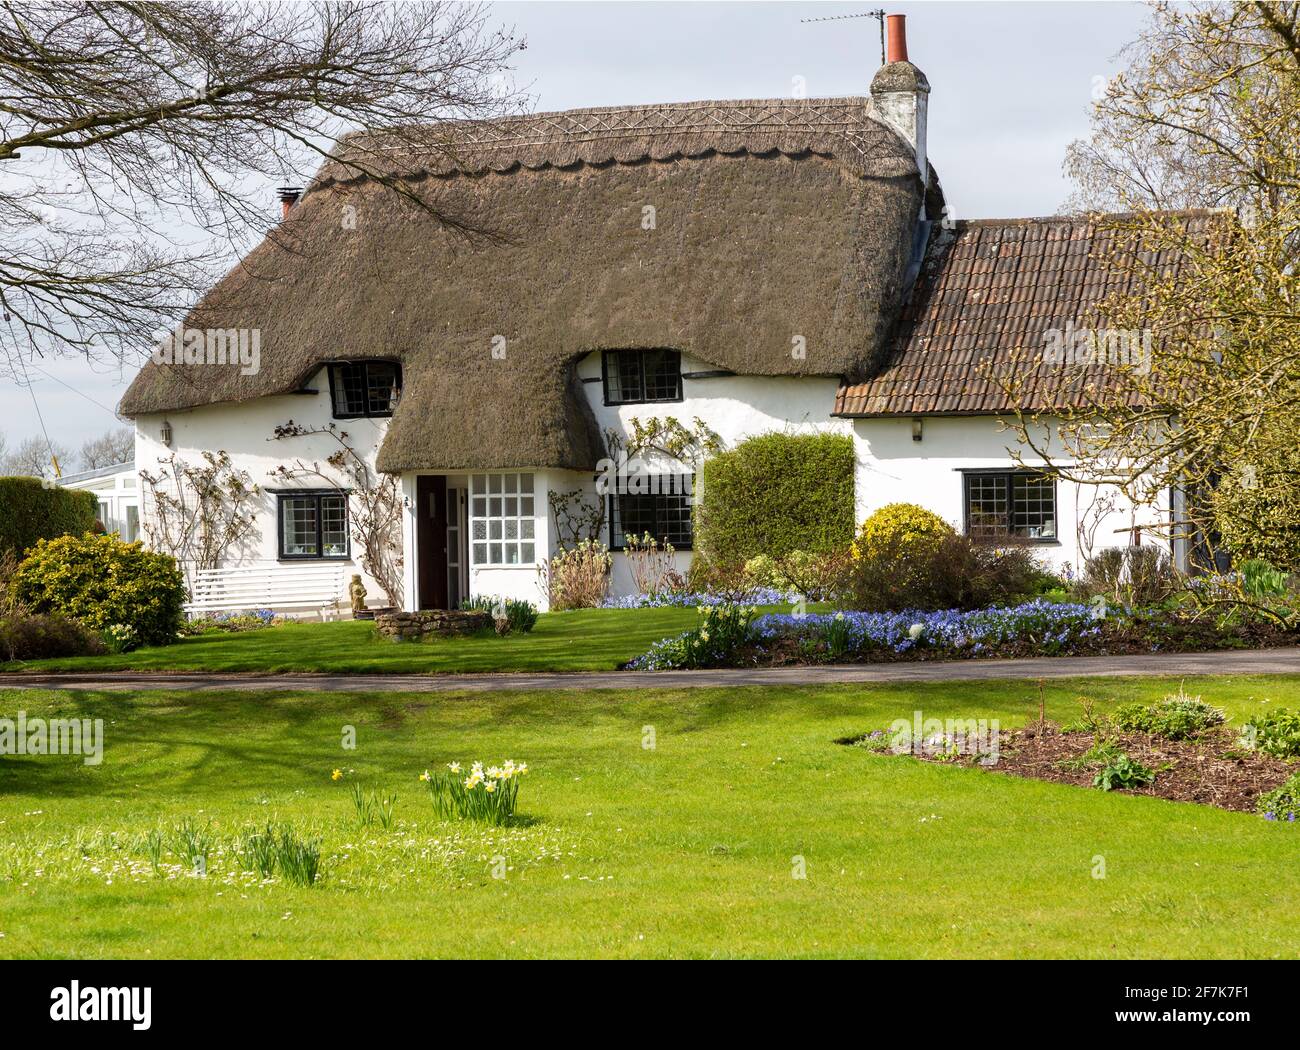 Jolie maison de campagne blanchie à la chaux au printemps, Cherhill, Wiltshire, Angleterre, Royaume-Uni Banque D'Images